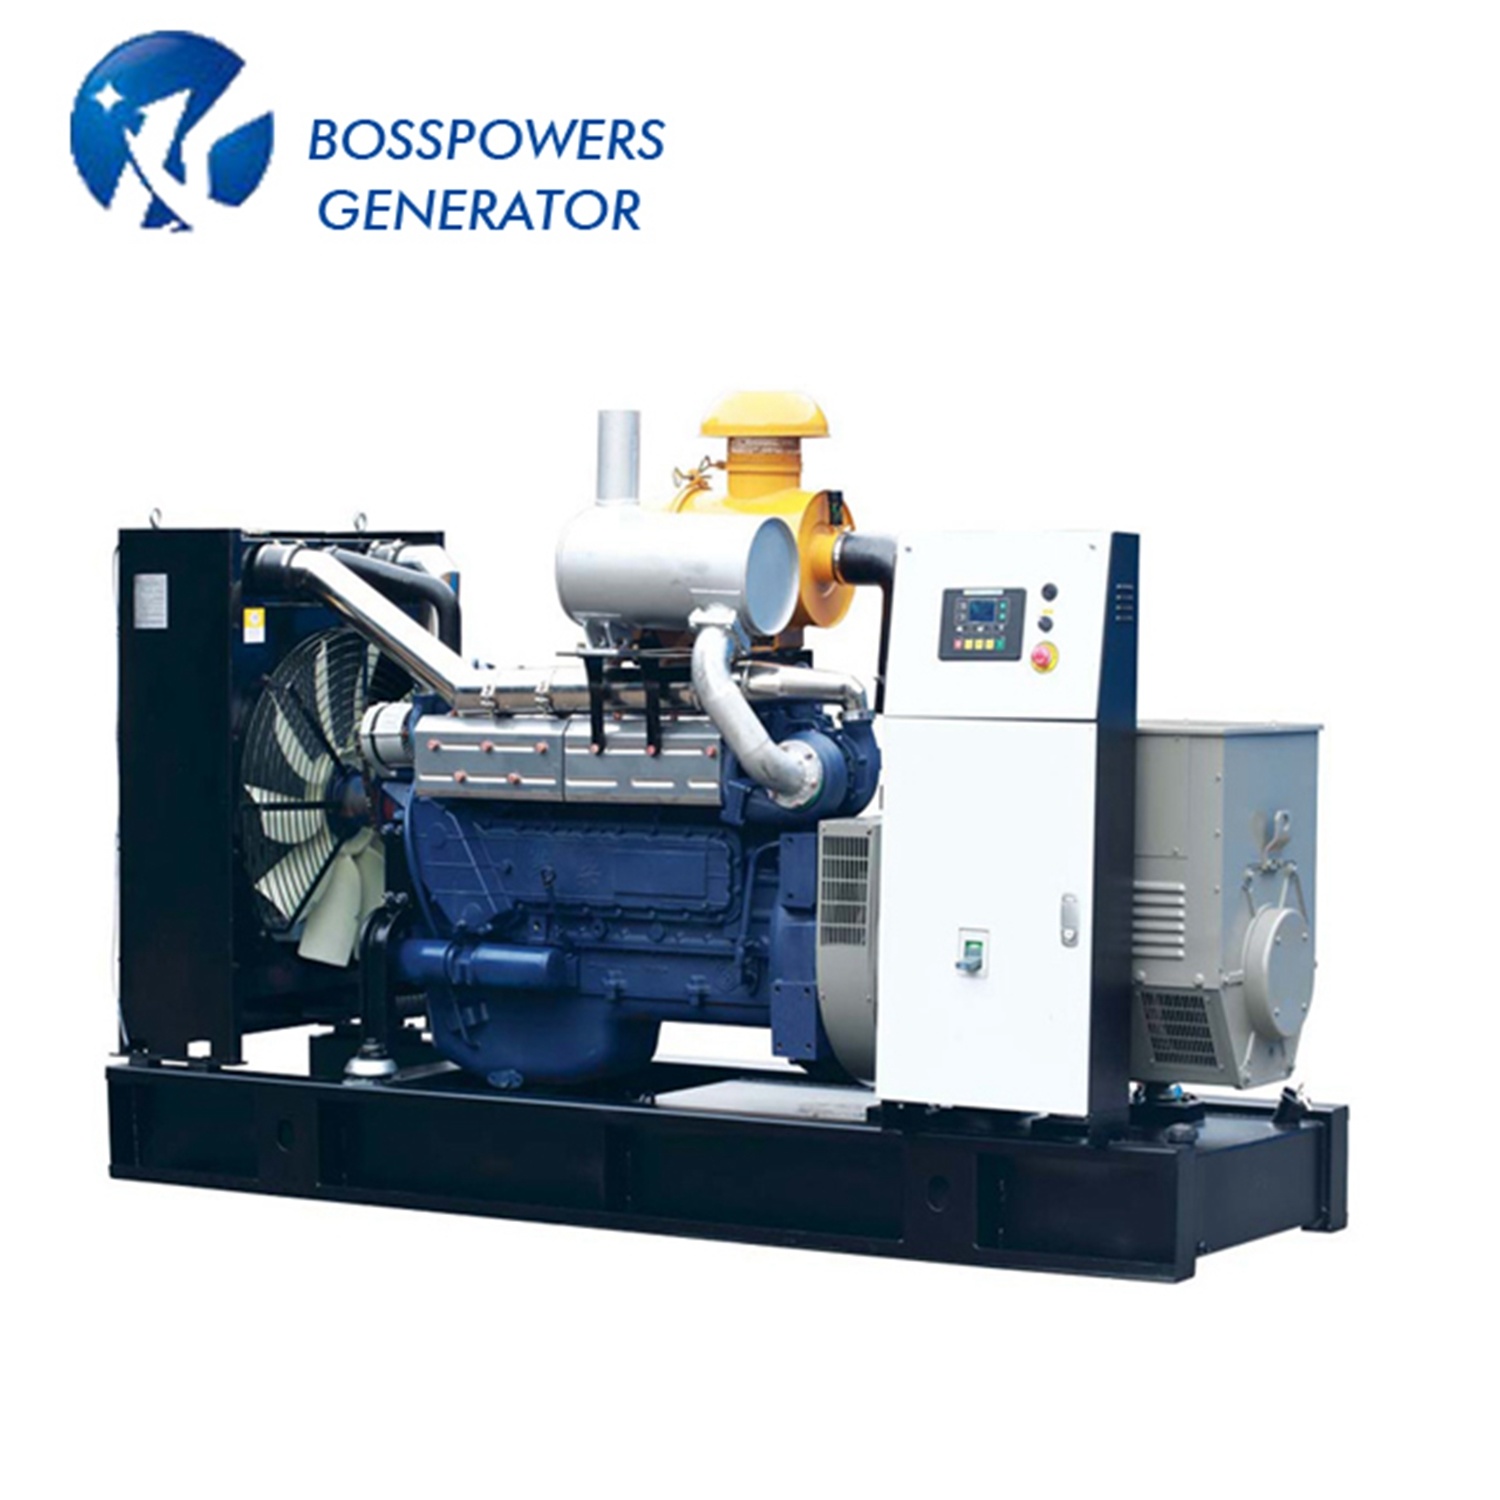 Industrial Generator Diesel Generator with Weichai Engine